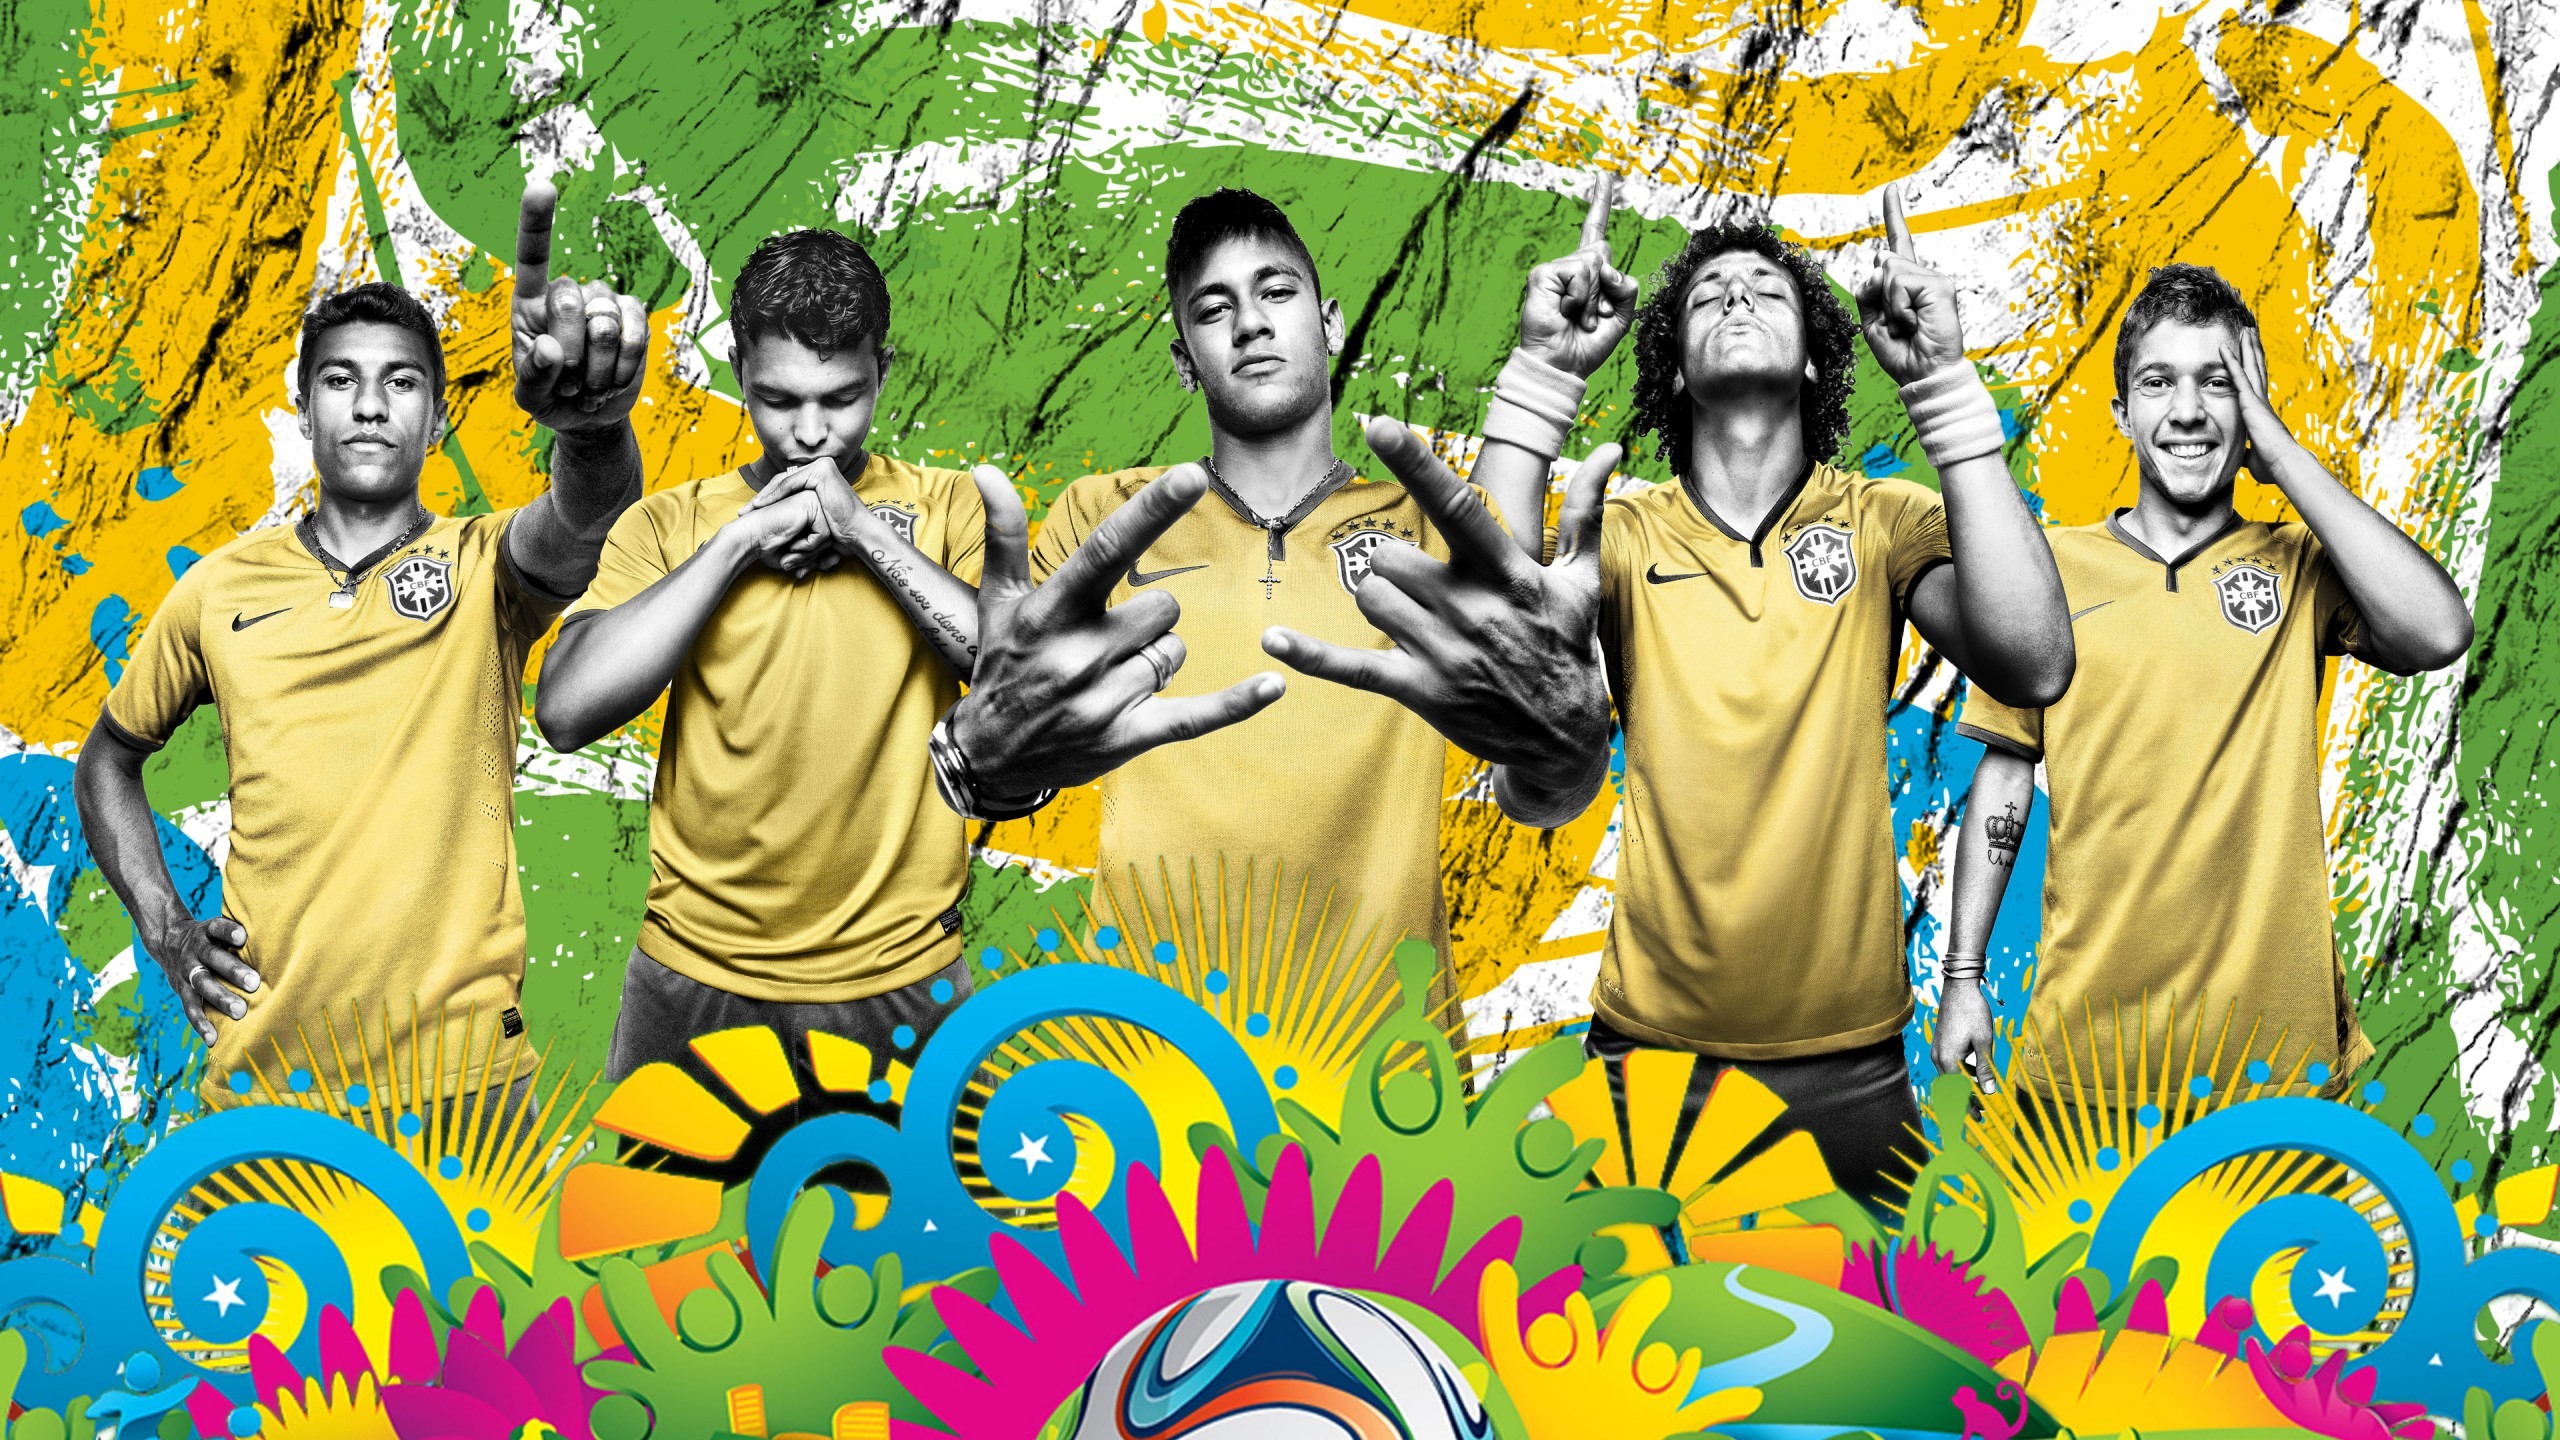 2560x1440 Brazil World Cup 2014 Team wallpaper